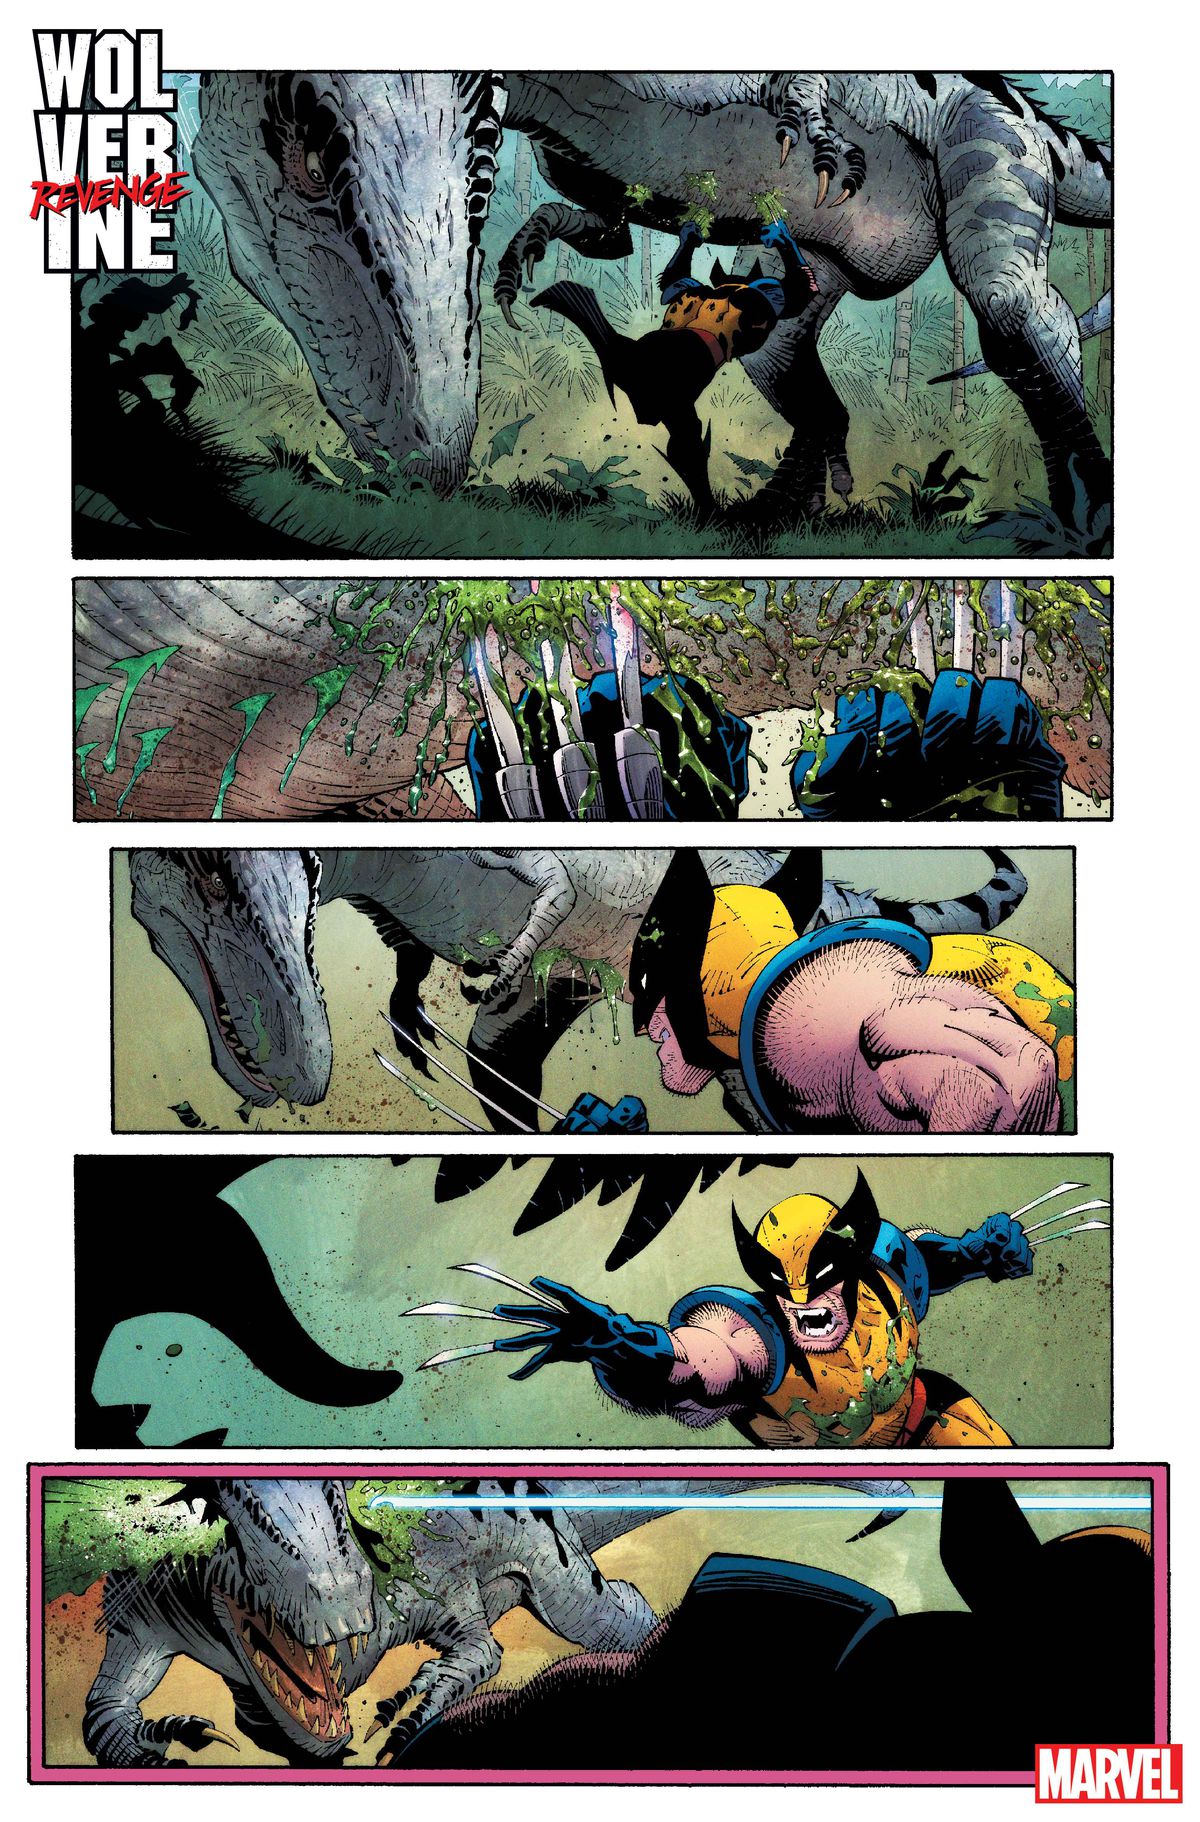 Wolverine biegnie pod dinozaurem typu terapoda, tnąc jego brzuch pazurami.  On i dinozaur ścierają się i mają zamiar ponownie się zderzyć, gdy z panelu zewnętrznego wystrzeliwuje jakiś pocisk lub laser, przebijając głowę dinozaura od oka do oka, w Wolverine: Revenge #1.